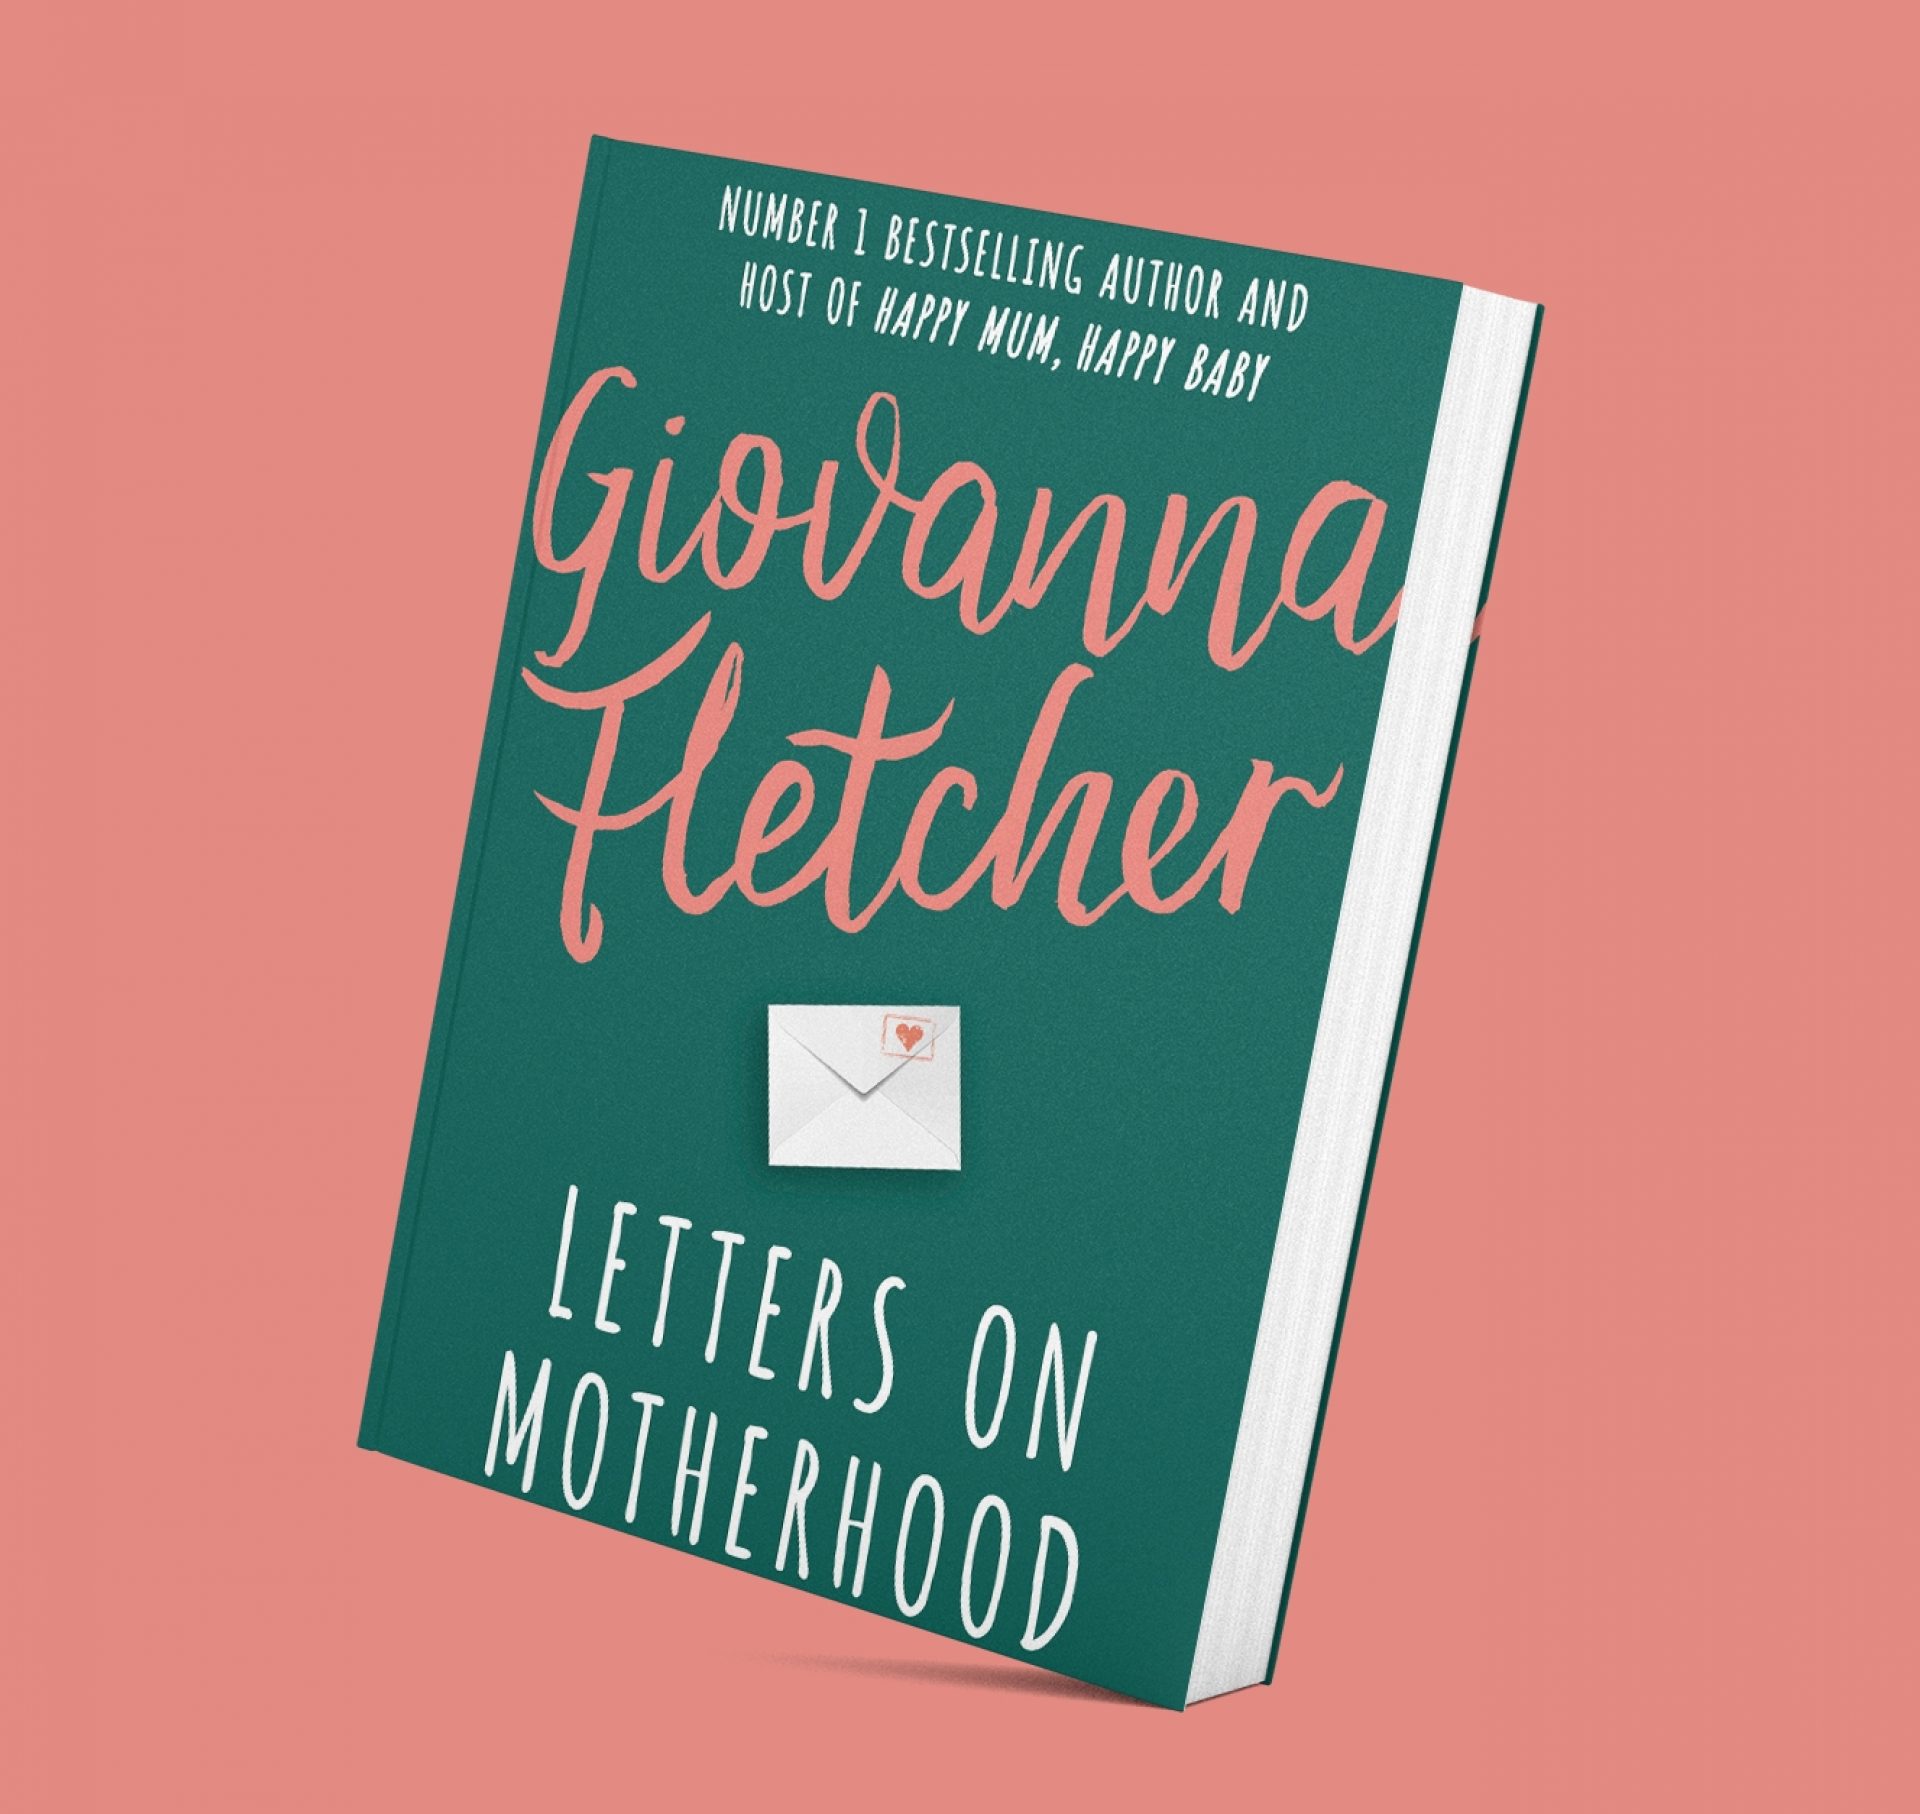 Letters On Motherhood